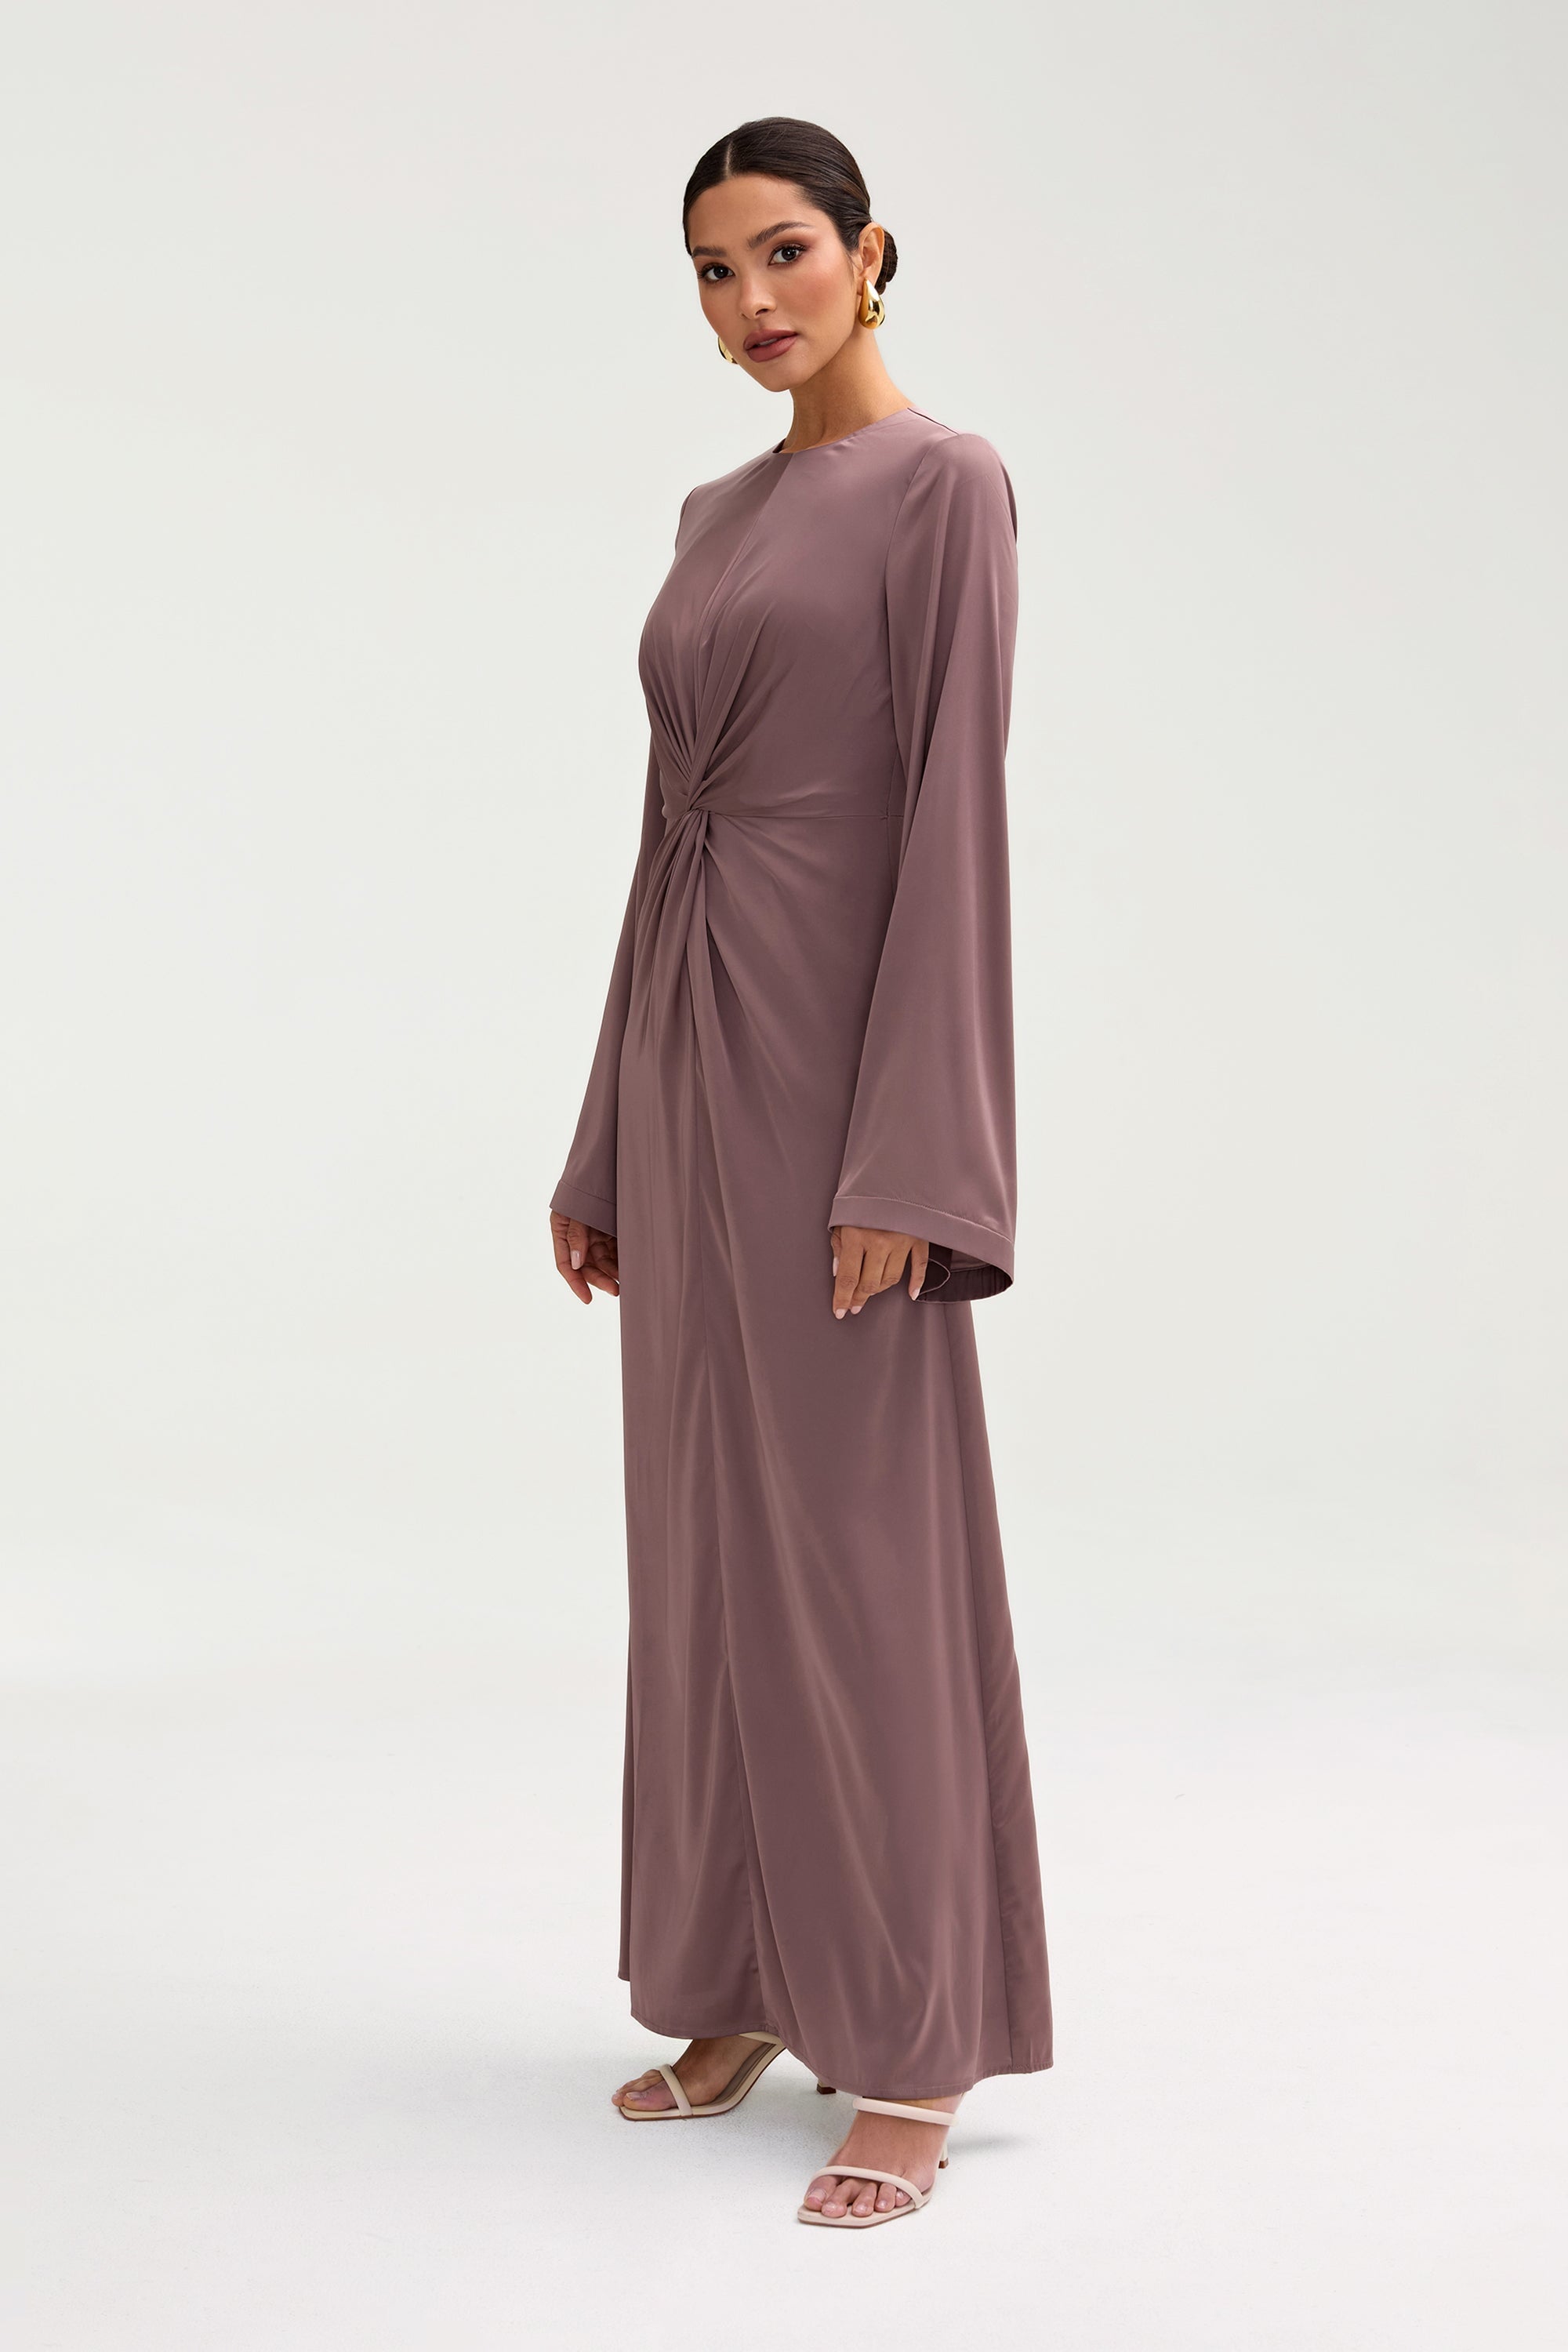 Duha Satin Twist Front Maxi Dress - Deep Taupe Clothing Veiled 